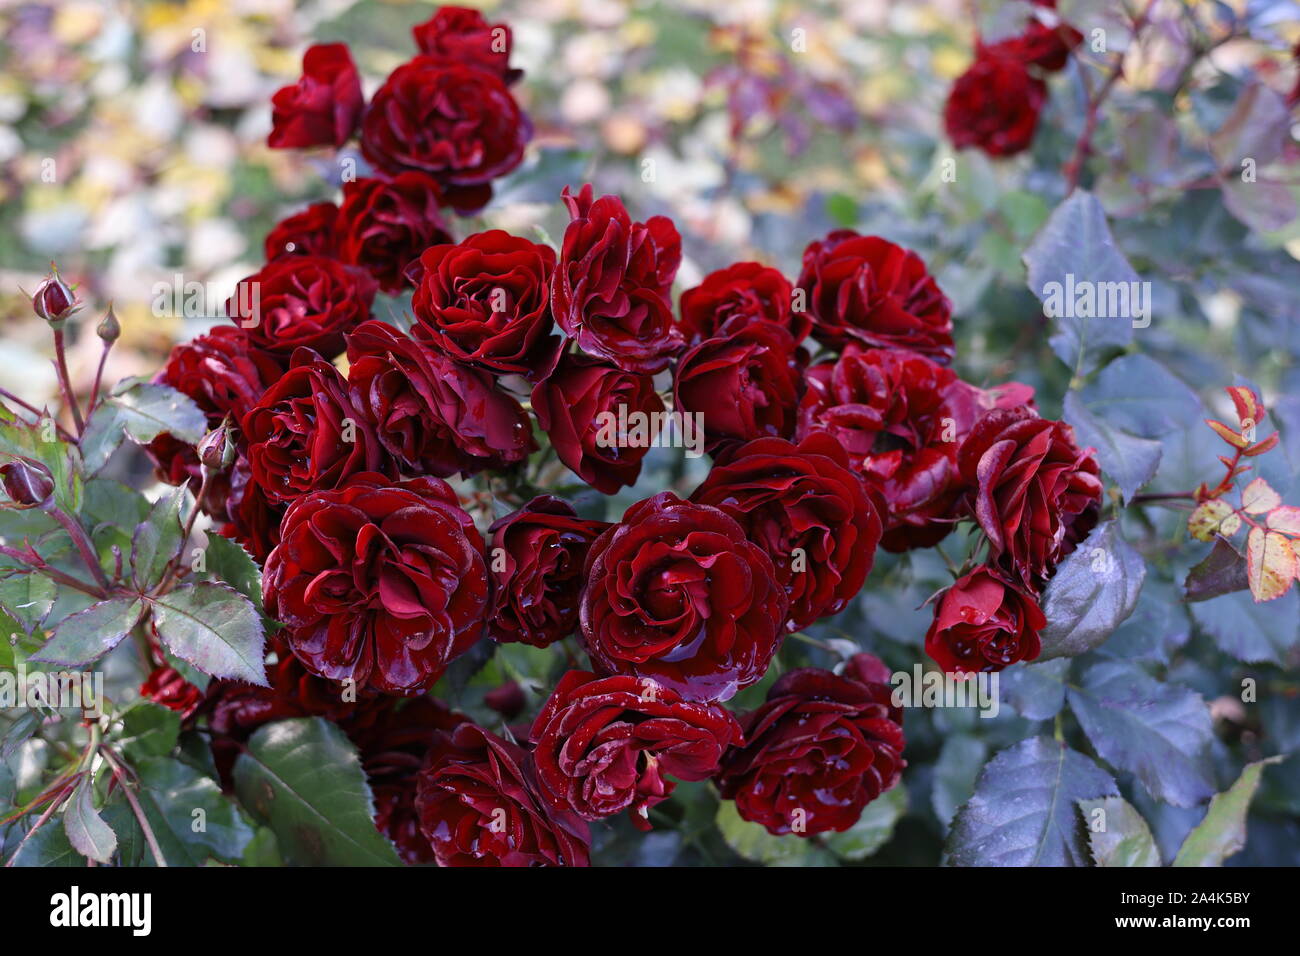 De belles roses rouges sang dans le jardin. Gouttes de pluie comme cristaux sur les pétales. Photo de fond romantique. Mariage, Saint Valentin, de l'humeur rêveuse. Banque D'Images